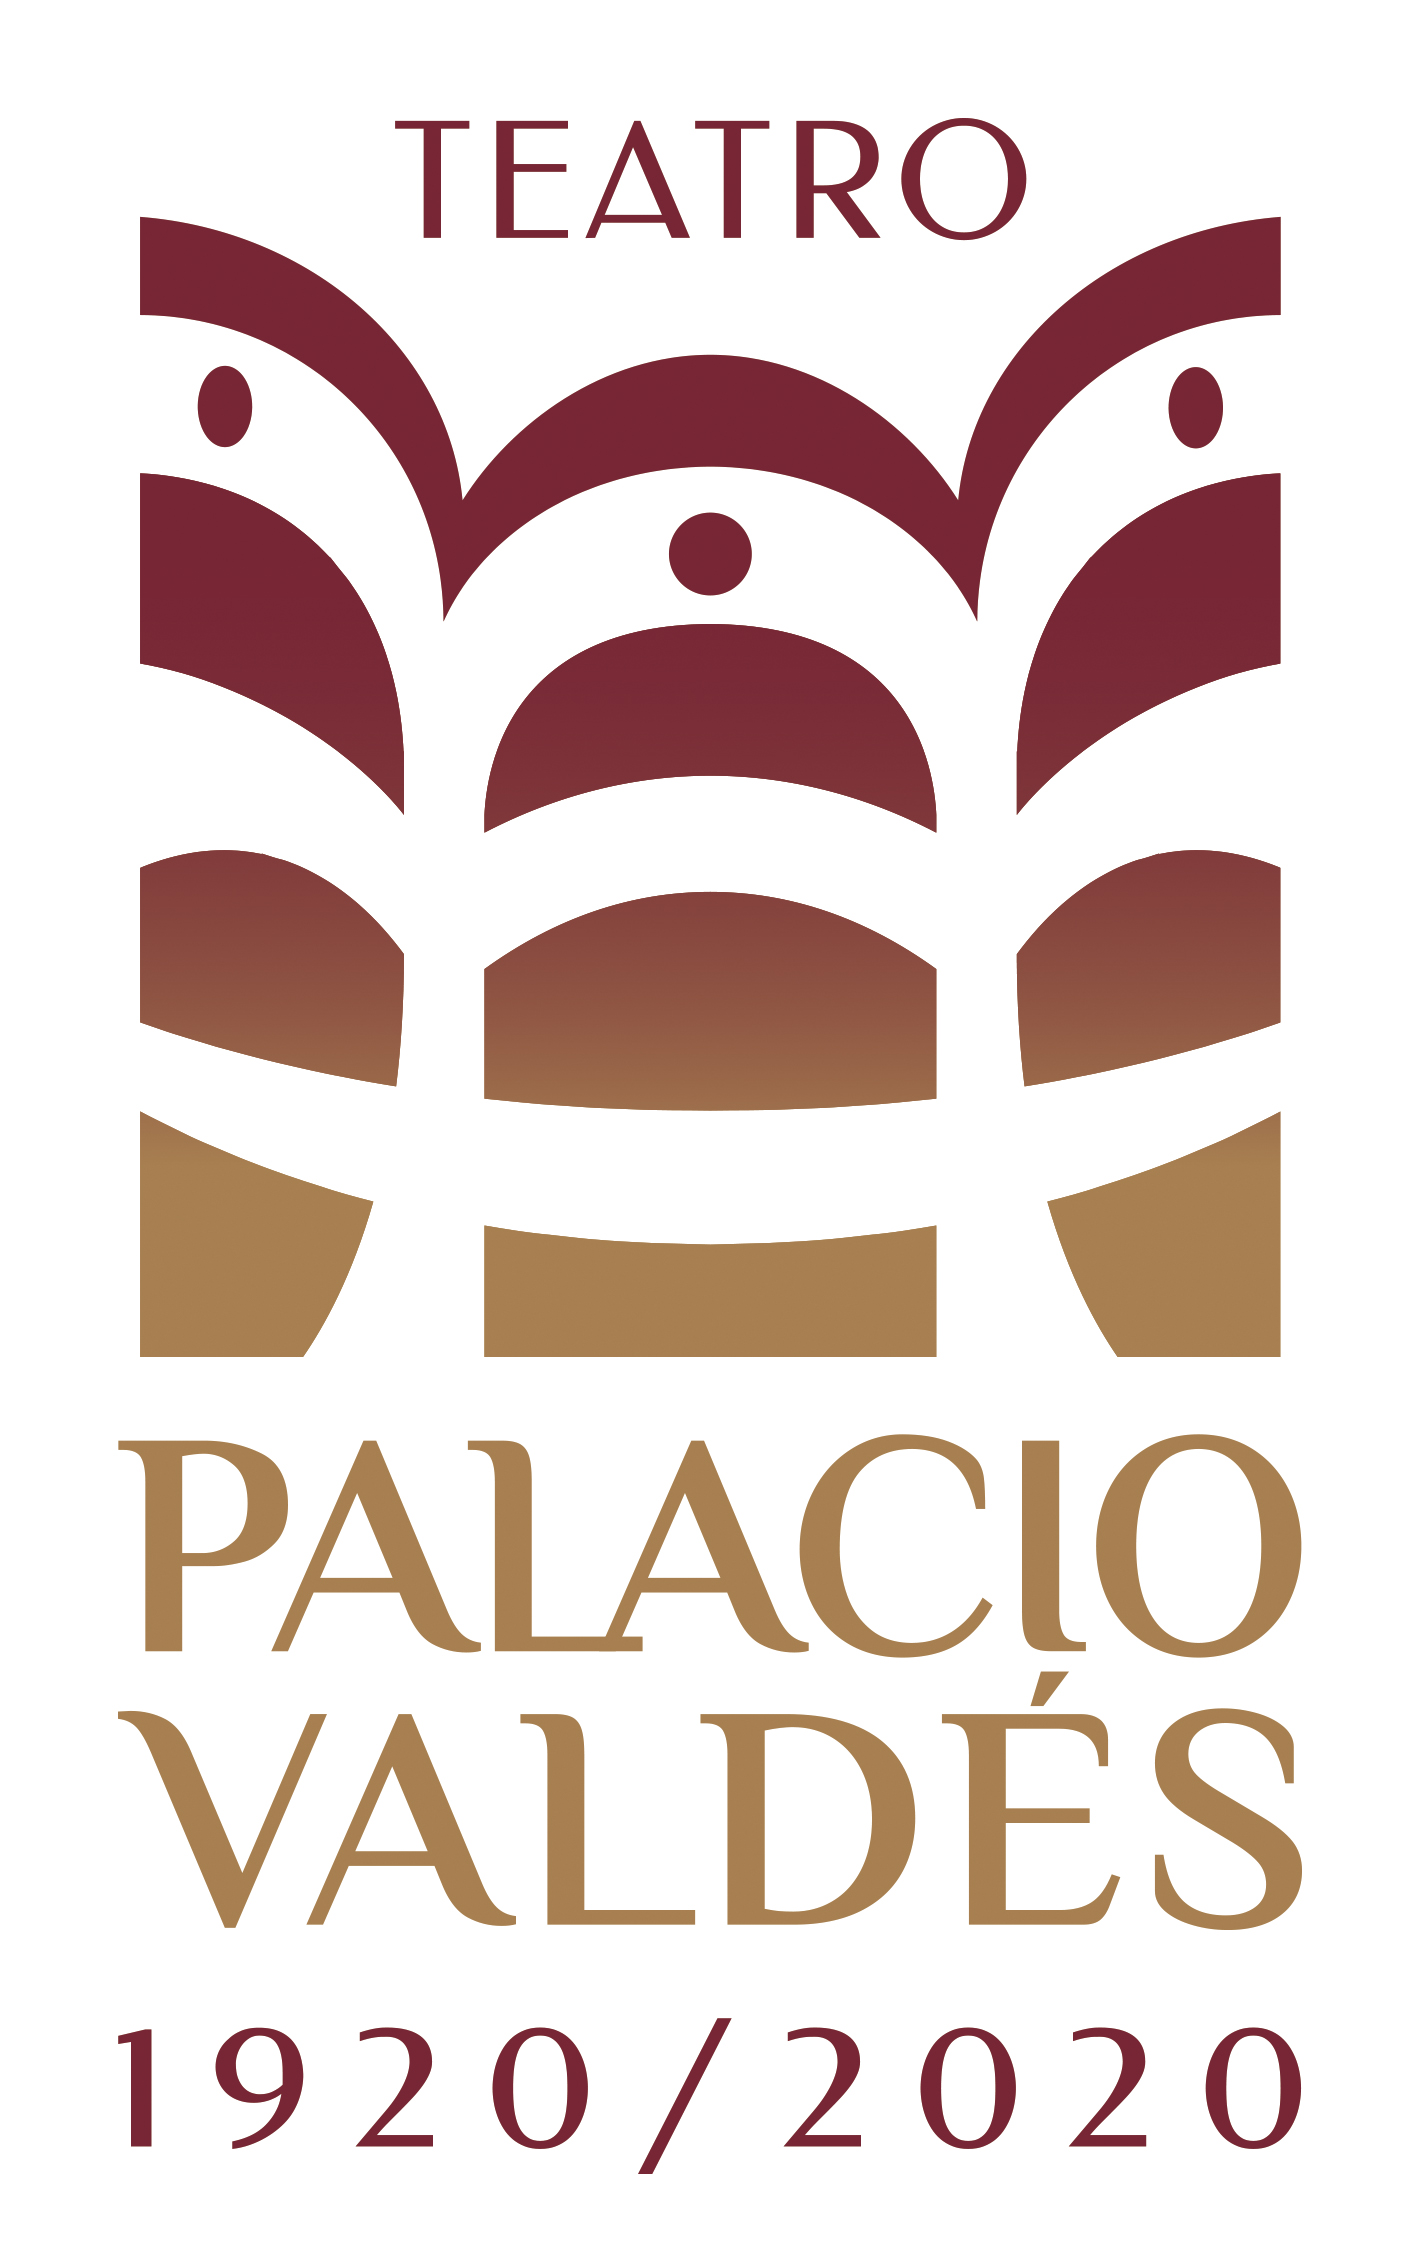 El Teatro Palacio Valdés celebra su centenario con una gala operística, con invitaciones agotadas en sus dos representaciones